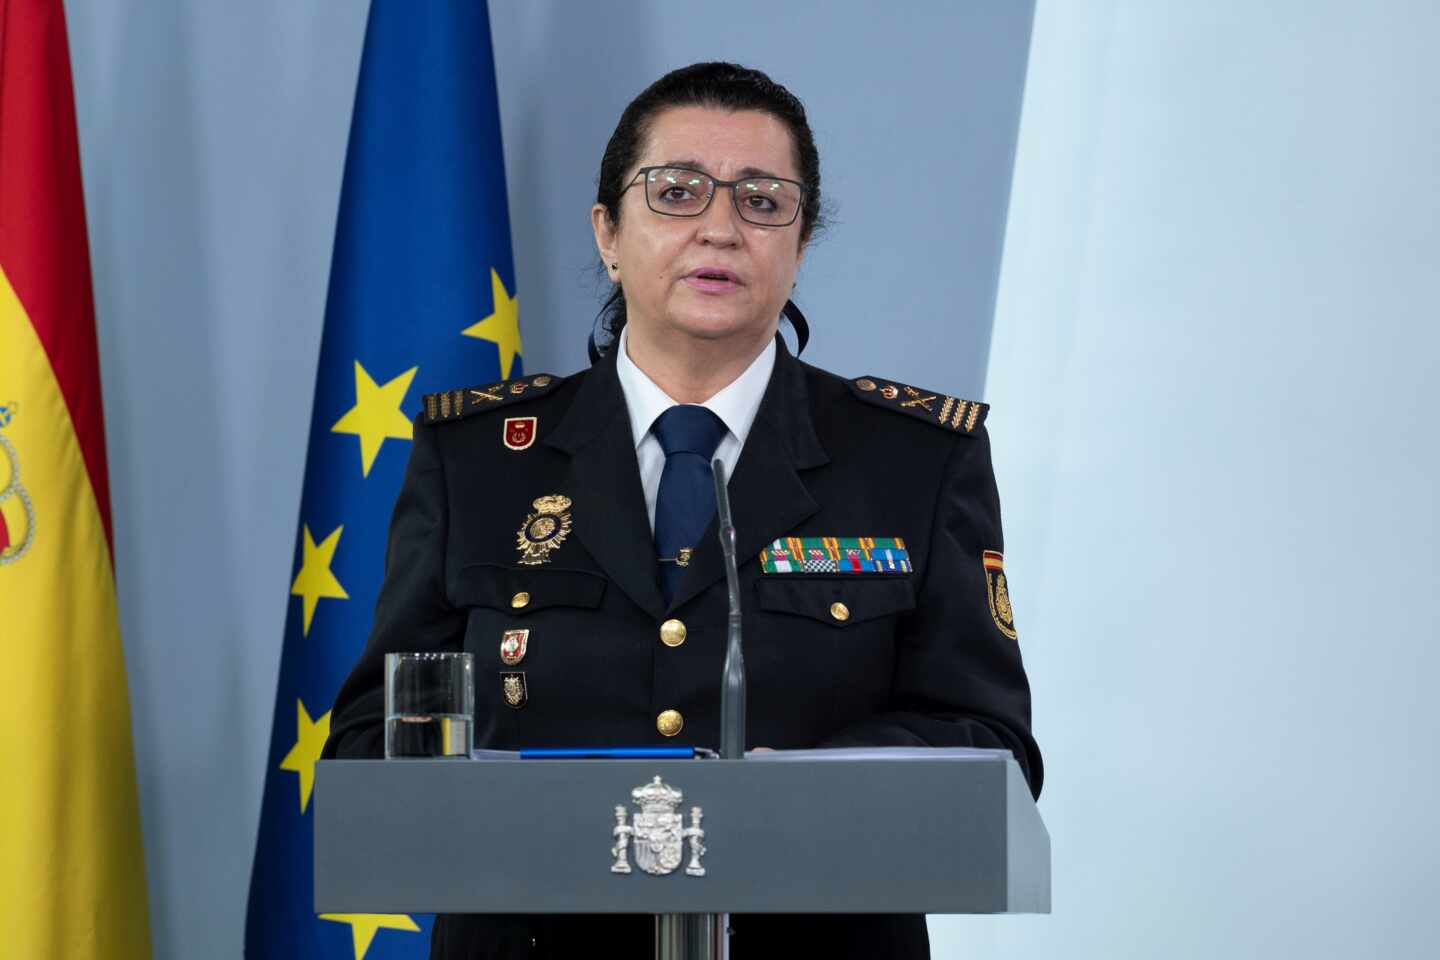 La comisaria principal Pilar Allué, en una comparecencia informativa en La Moncloa.